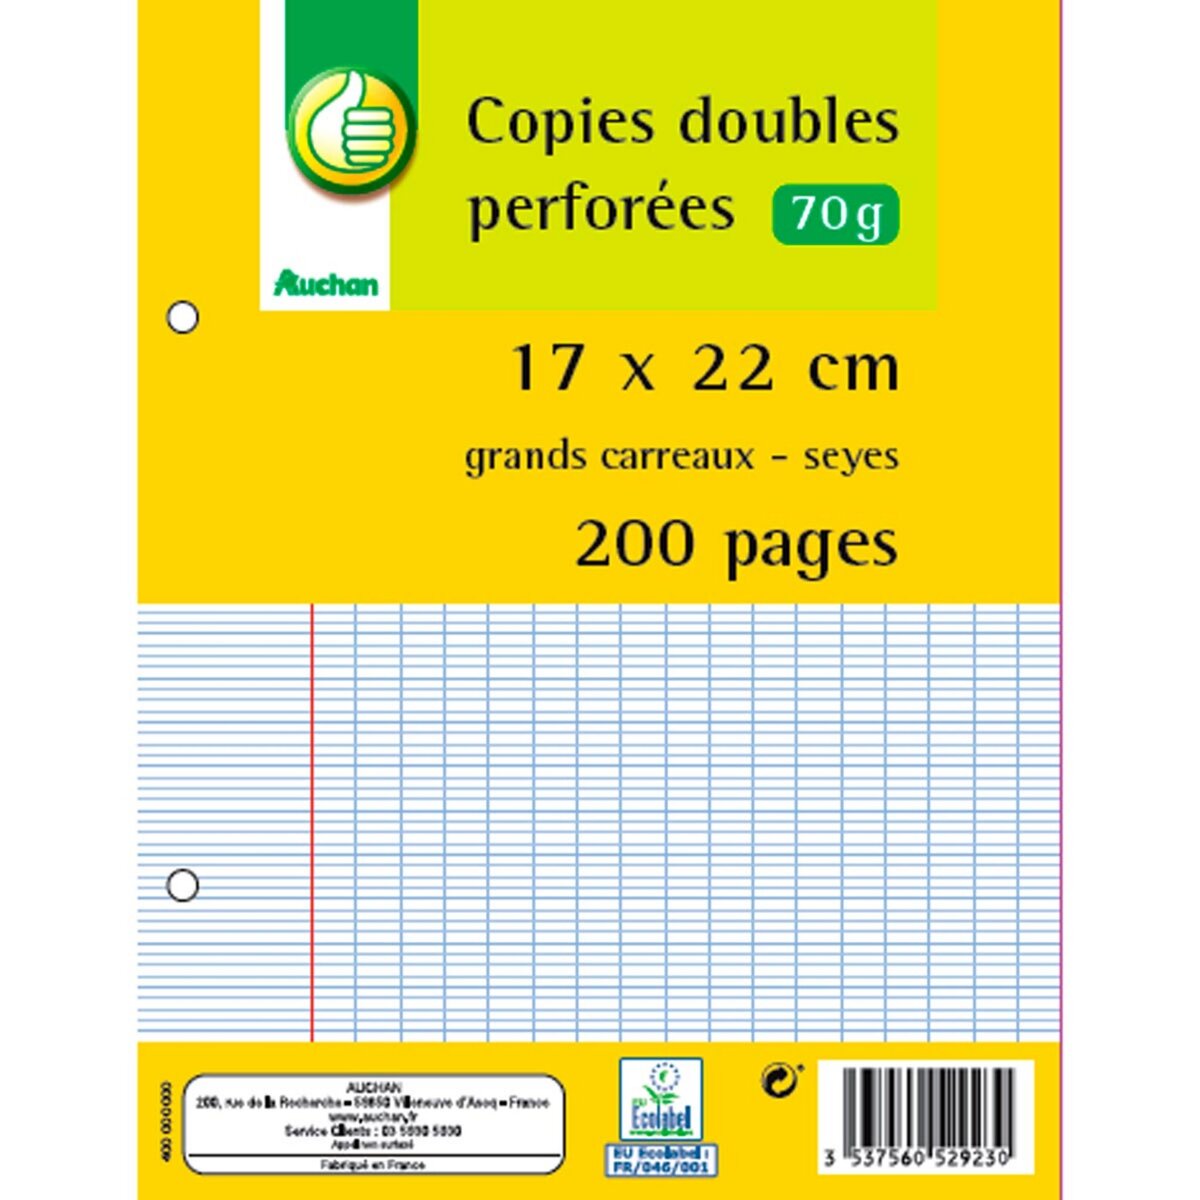 POUCE Copies doubles 200 pages 17x22cm grands carreaux Seyes perforées